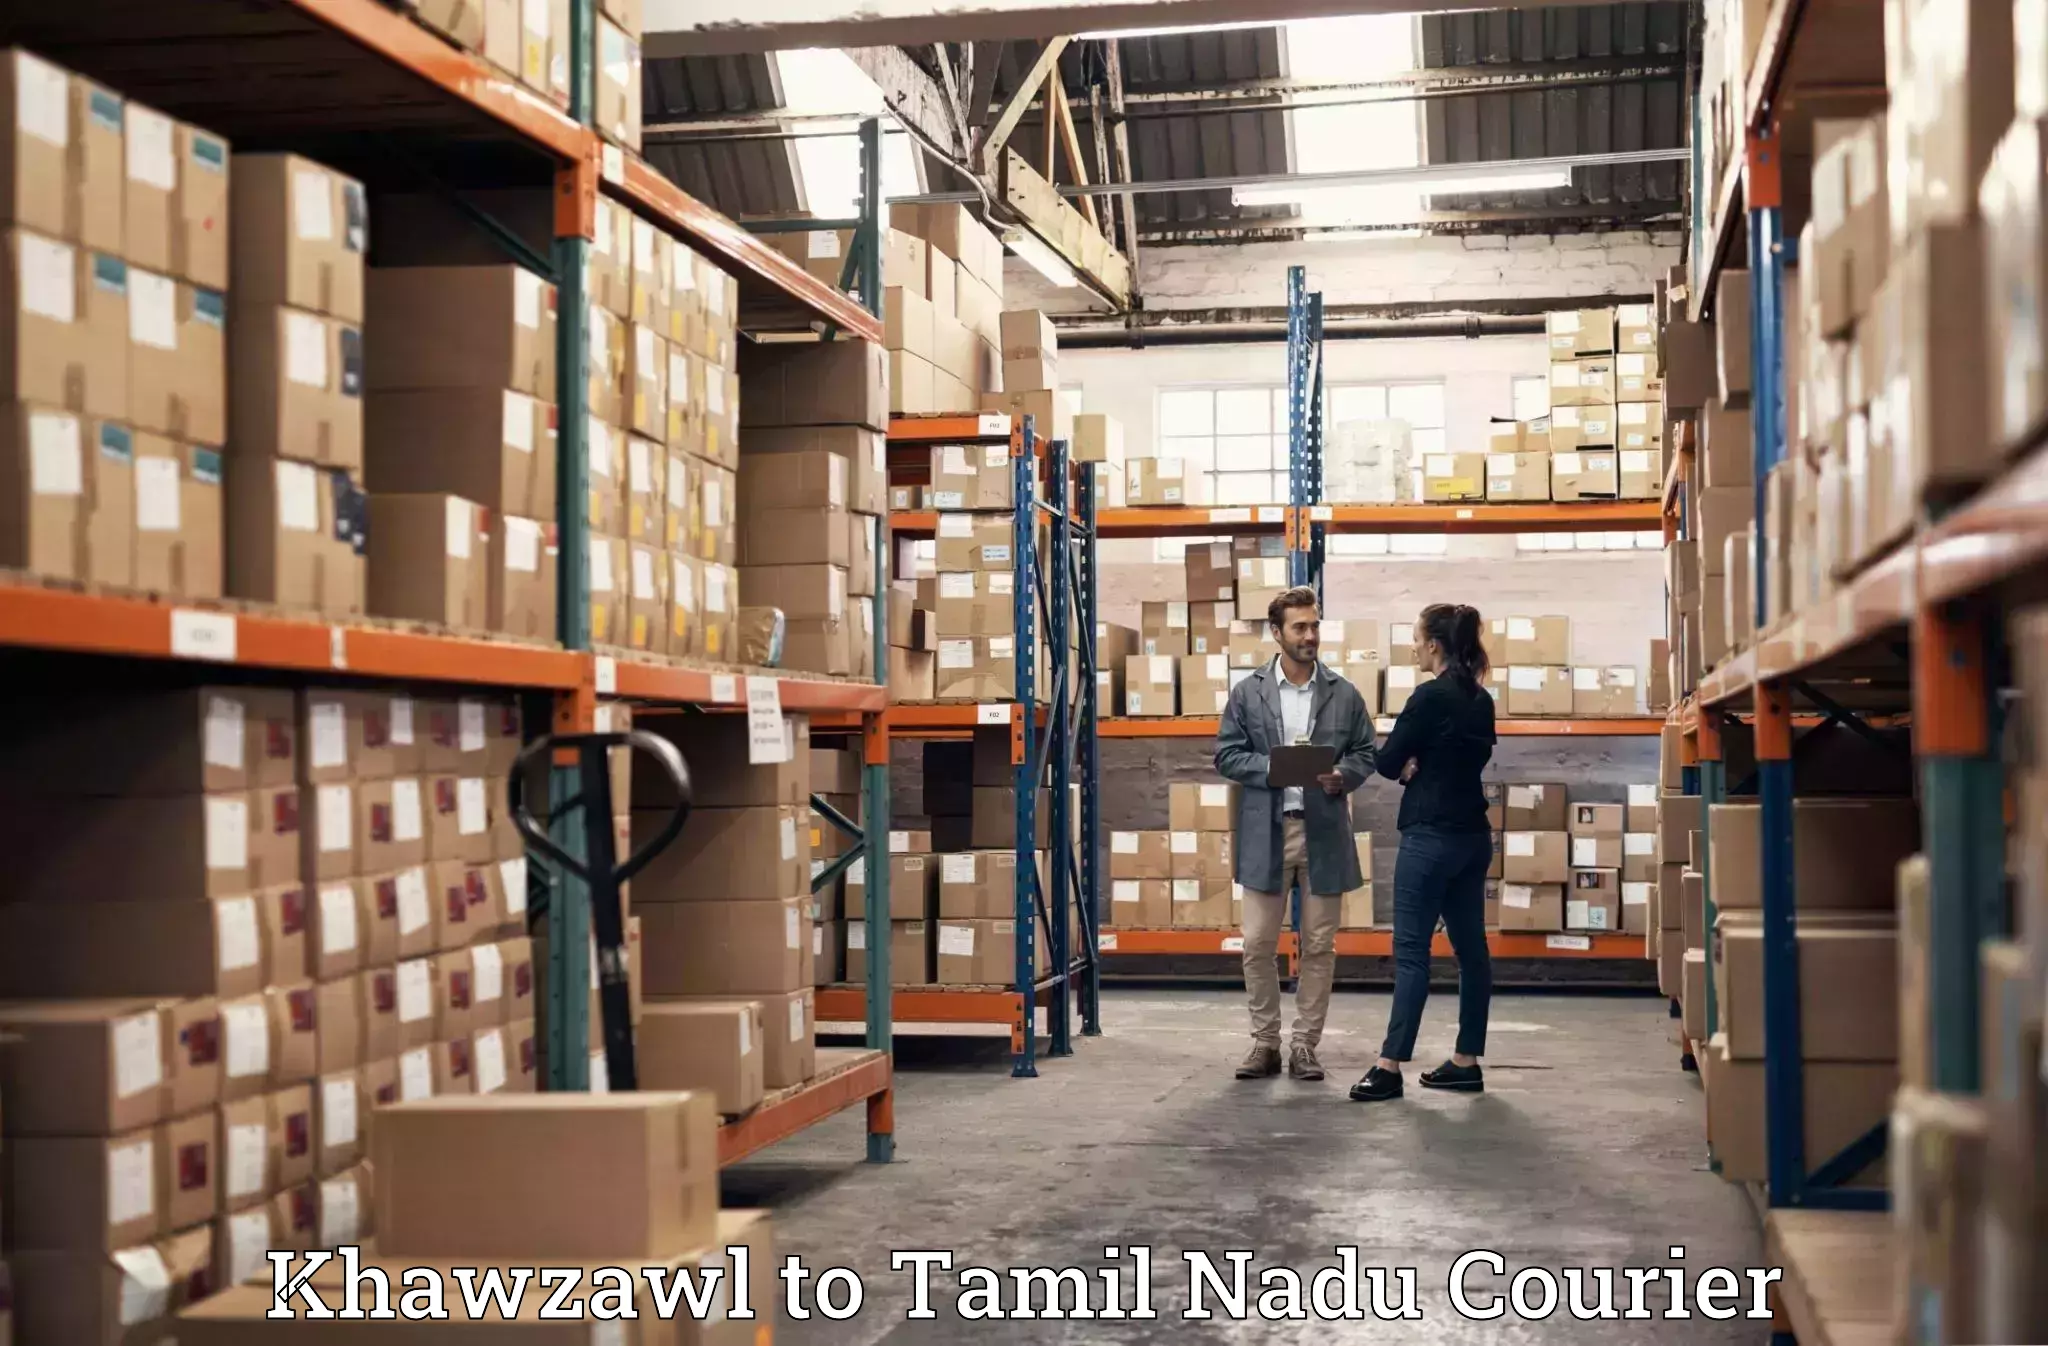 Customized moving solutions Khawzawl to Mayiladuthurai